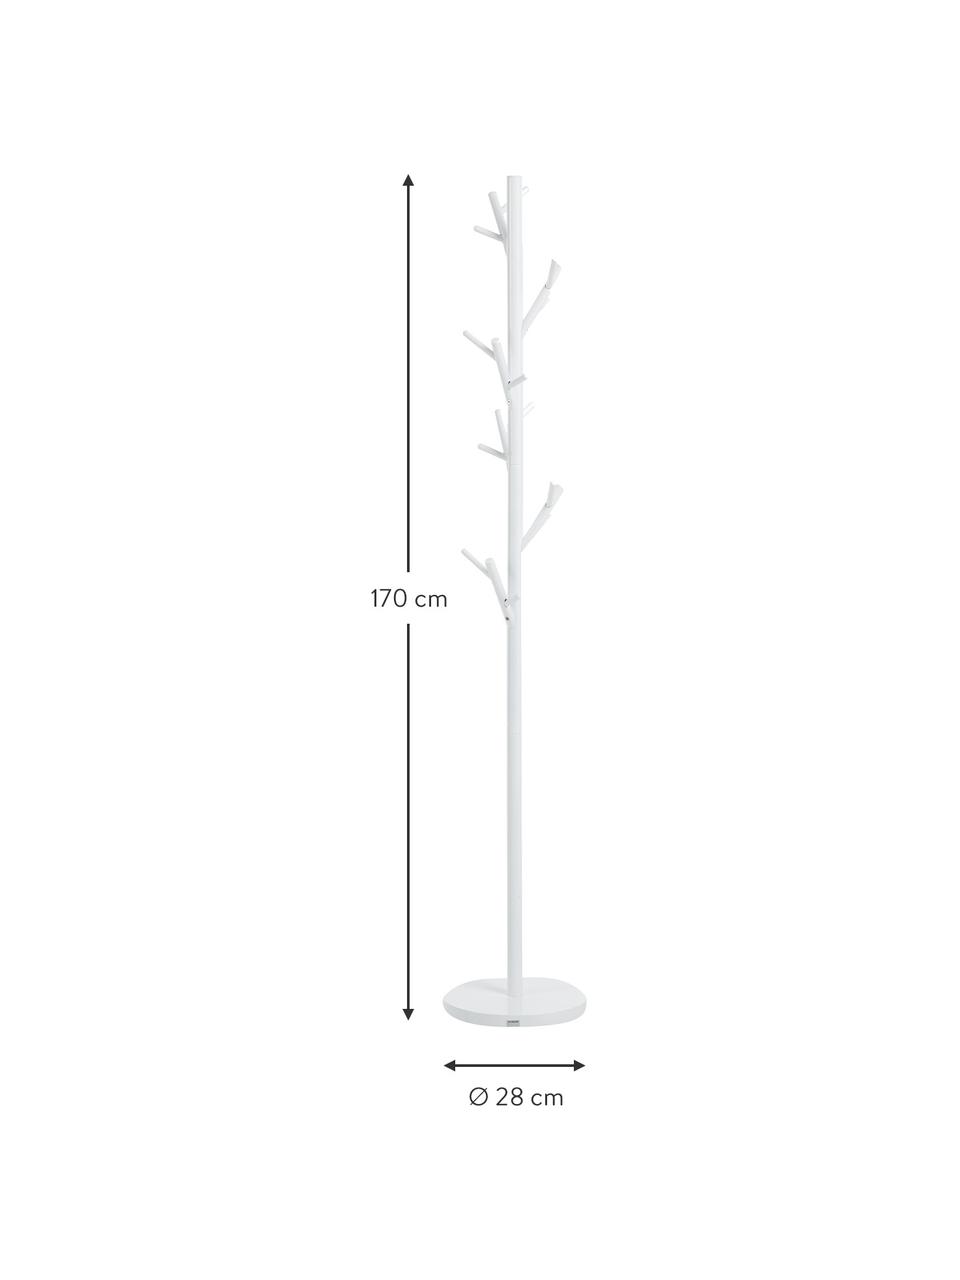 Kleiderständer Tree mit 18 Haken, Stahlrohr, pulverbeschichtet, Weiß, Ø 28 x H 170 cm